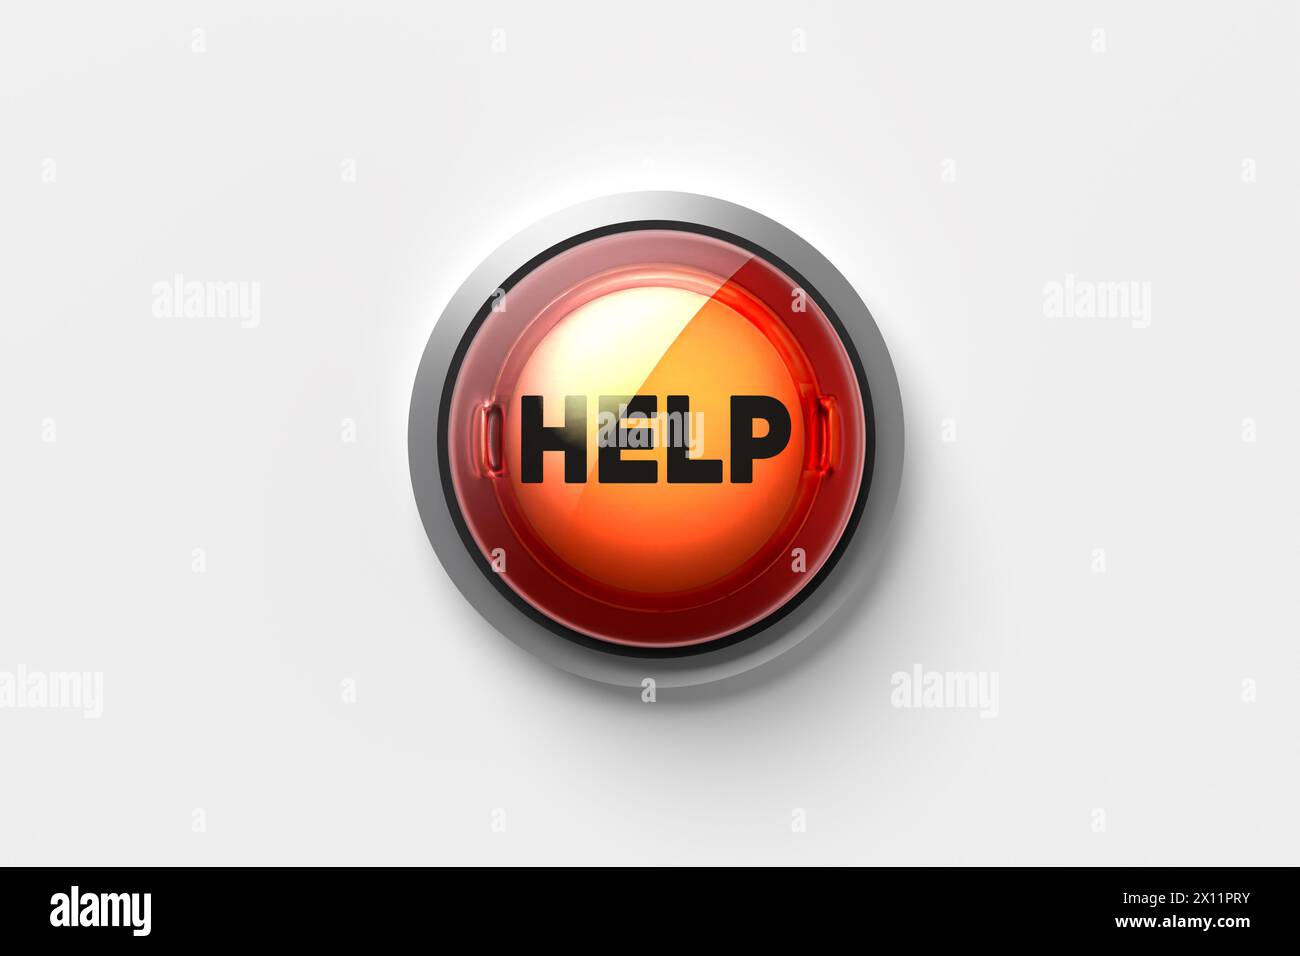 Le mot Help sur un bouton-poussoir isolé sur fond blanc. Concept de service d'aide en ligne. Rendu 3D. Banque D'Images